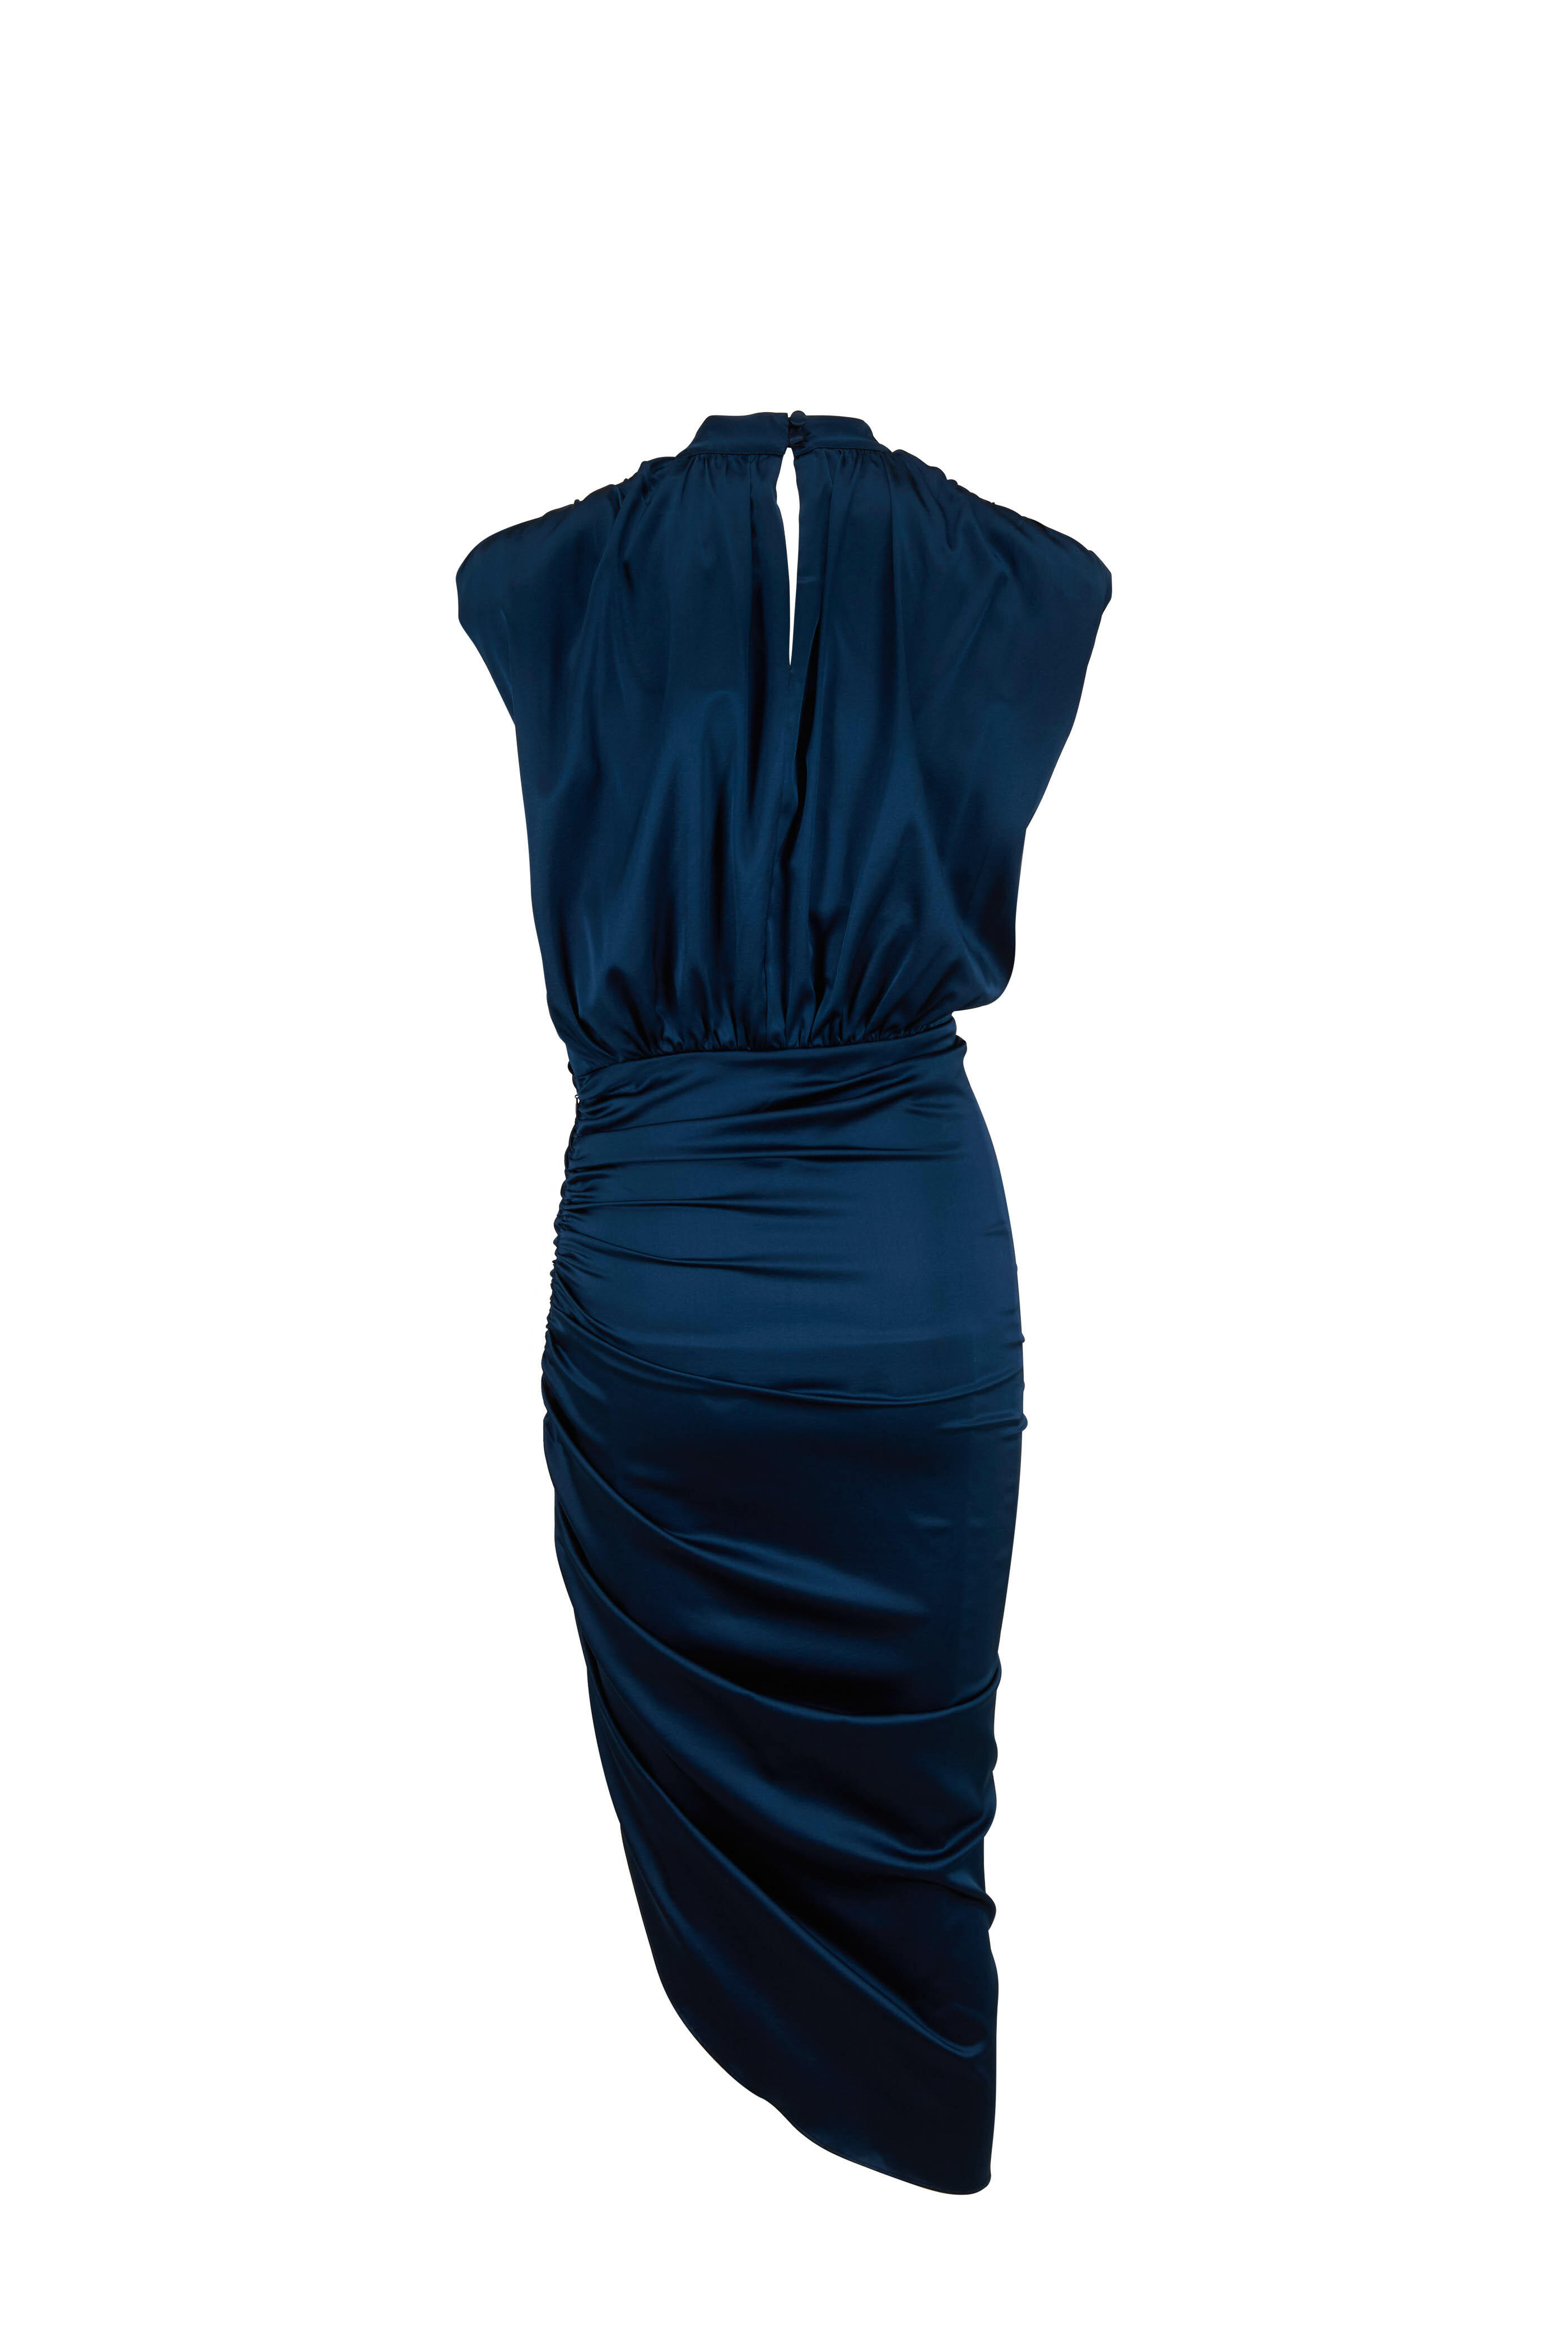 Veronica Beard - Kendall Ink Blue Stretch Silk Sleeveless Dress